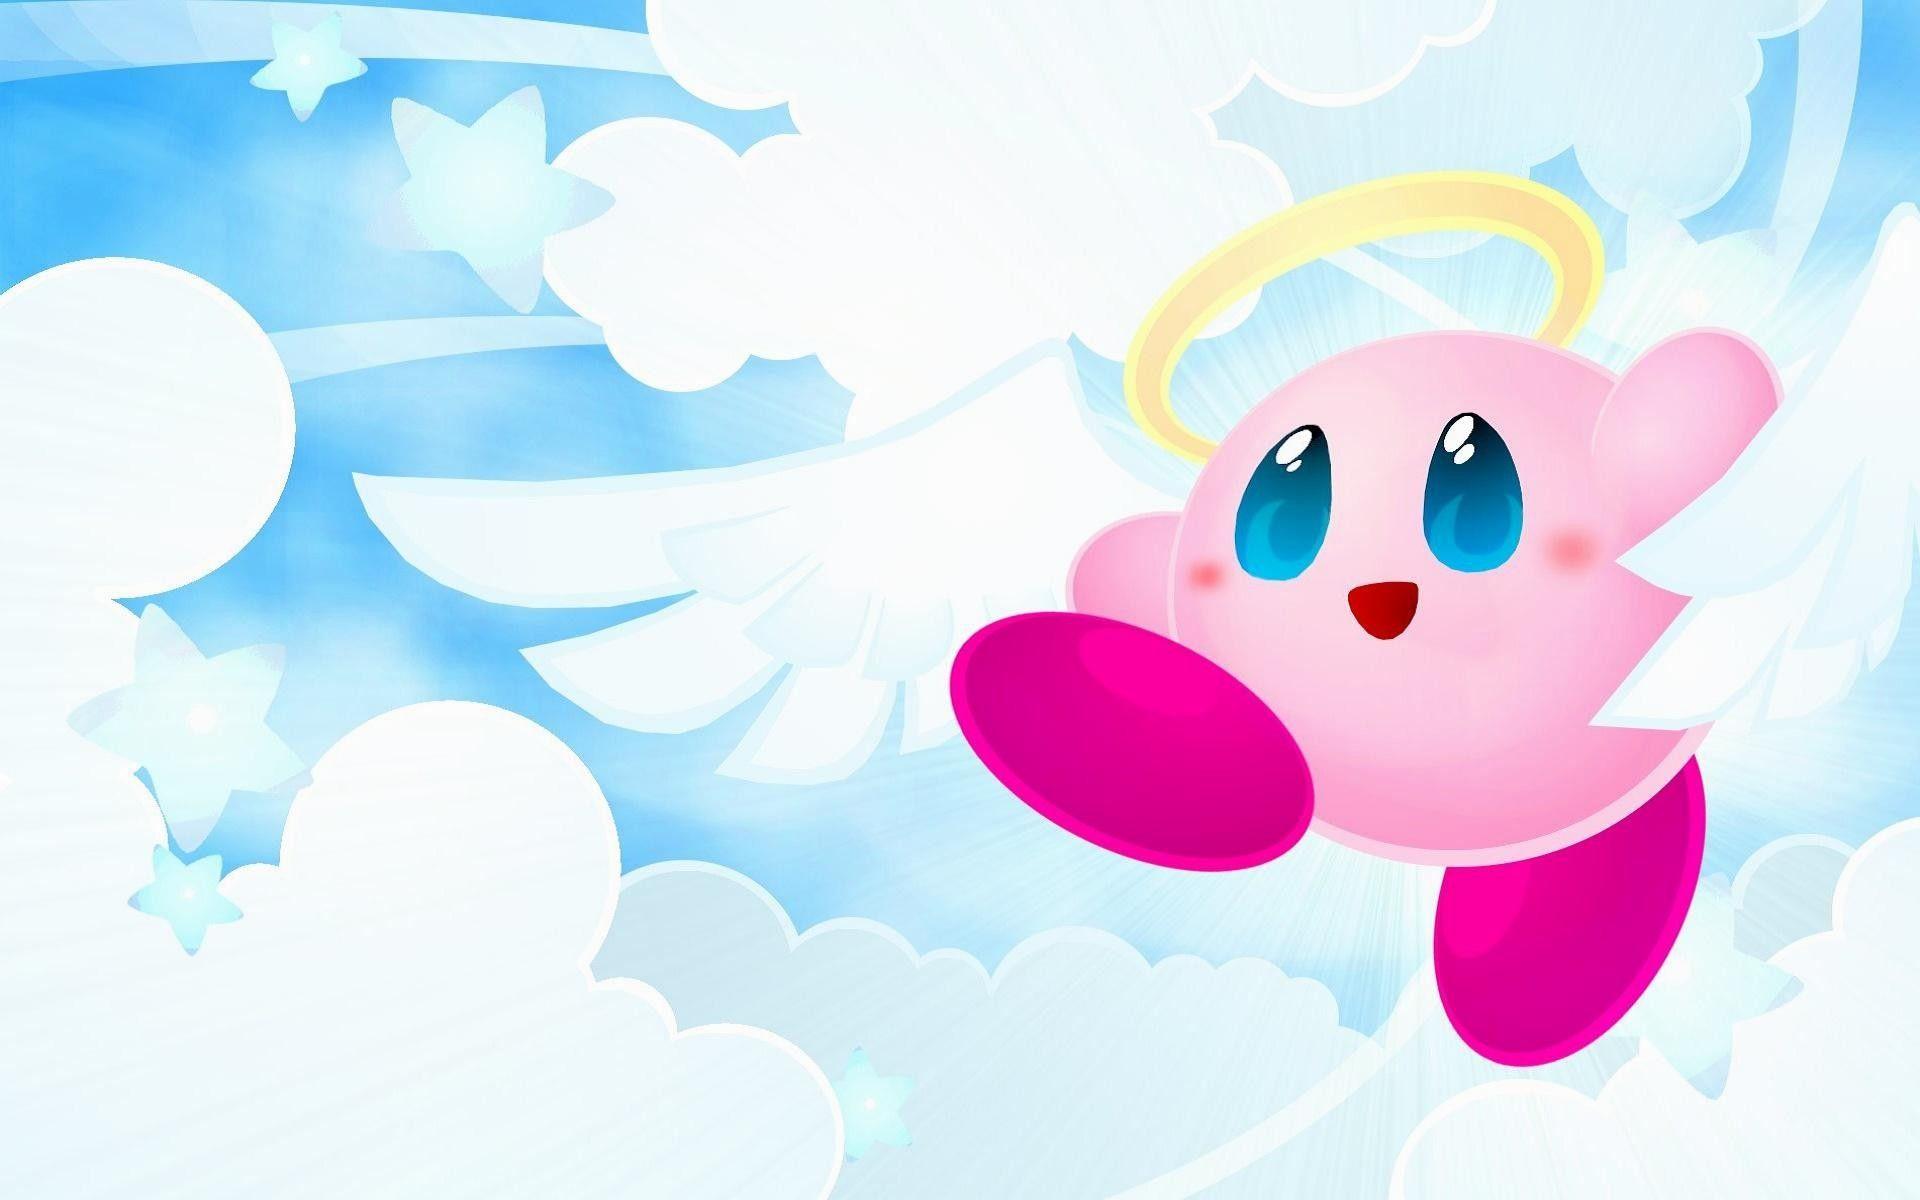 Ngắm nhìn những hình ảnh về Kirby đáng yêu với nền tảng màu sắc tươi sáng, bạn sẽ cảm thấy như đang được đắm mình vào một thế giới đầy ngọt ngào. Với các hình nền này, bạn sẽ tìm thấy sự dễ chịu mỗi khi nhìn vào màn hình điện thoại của mình.